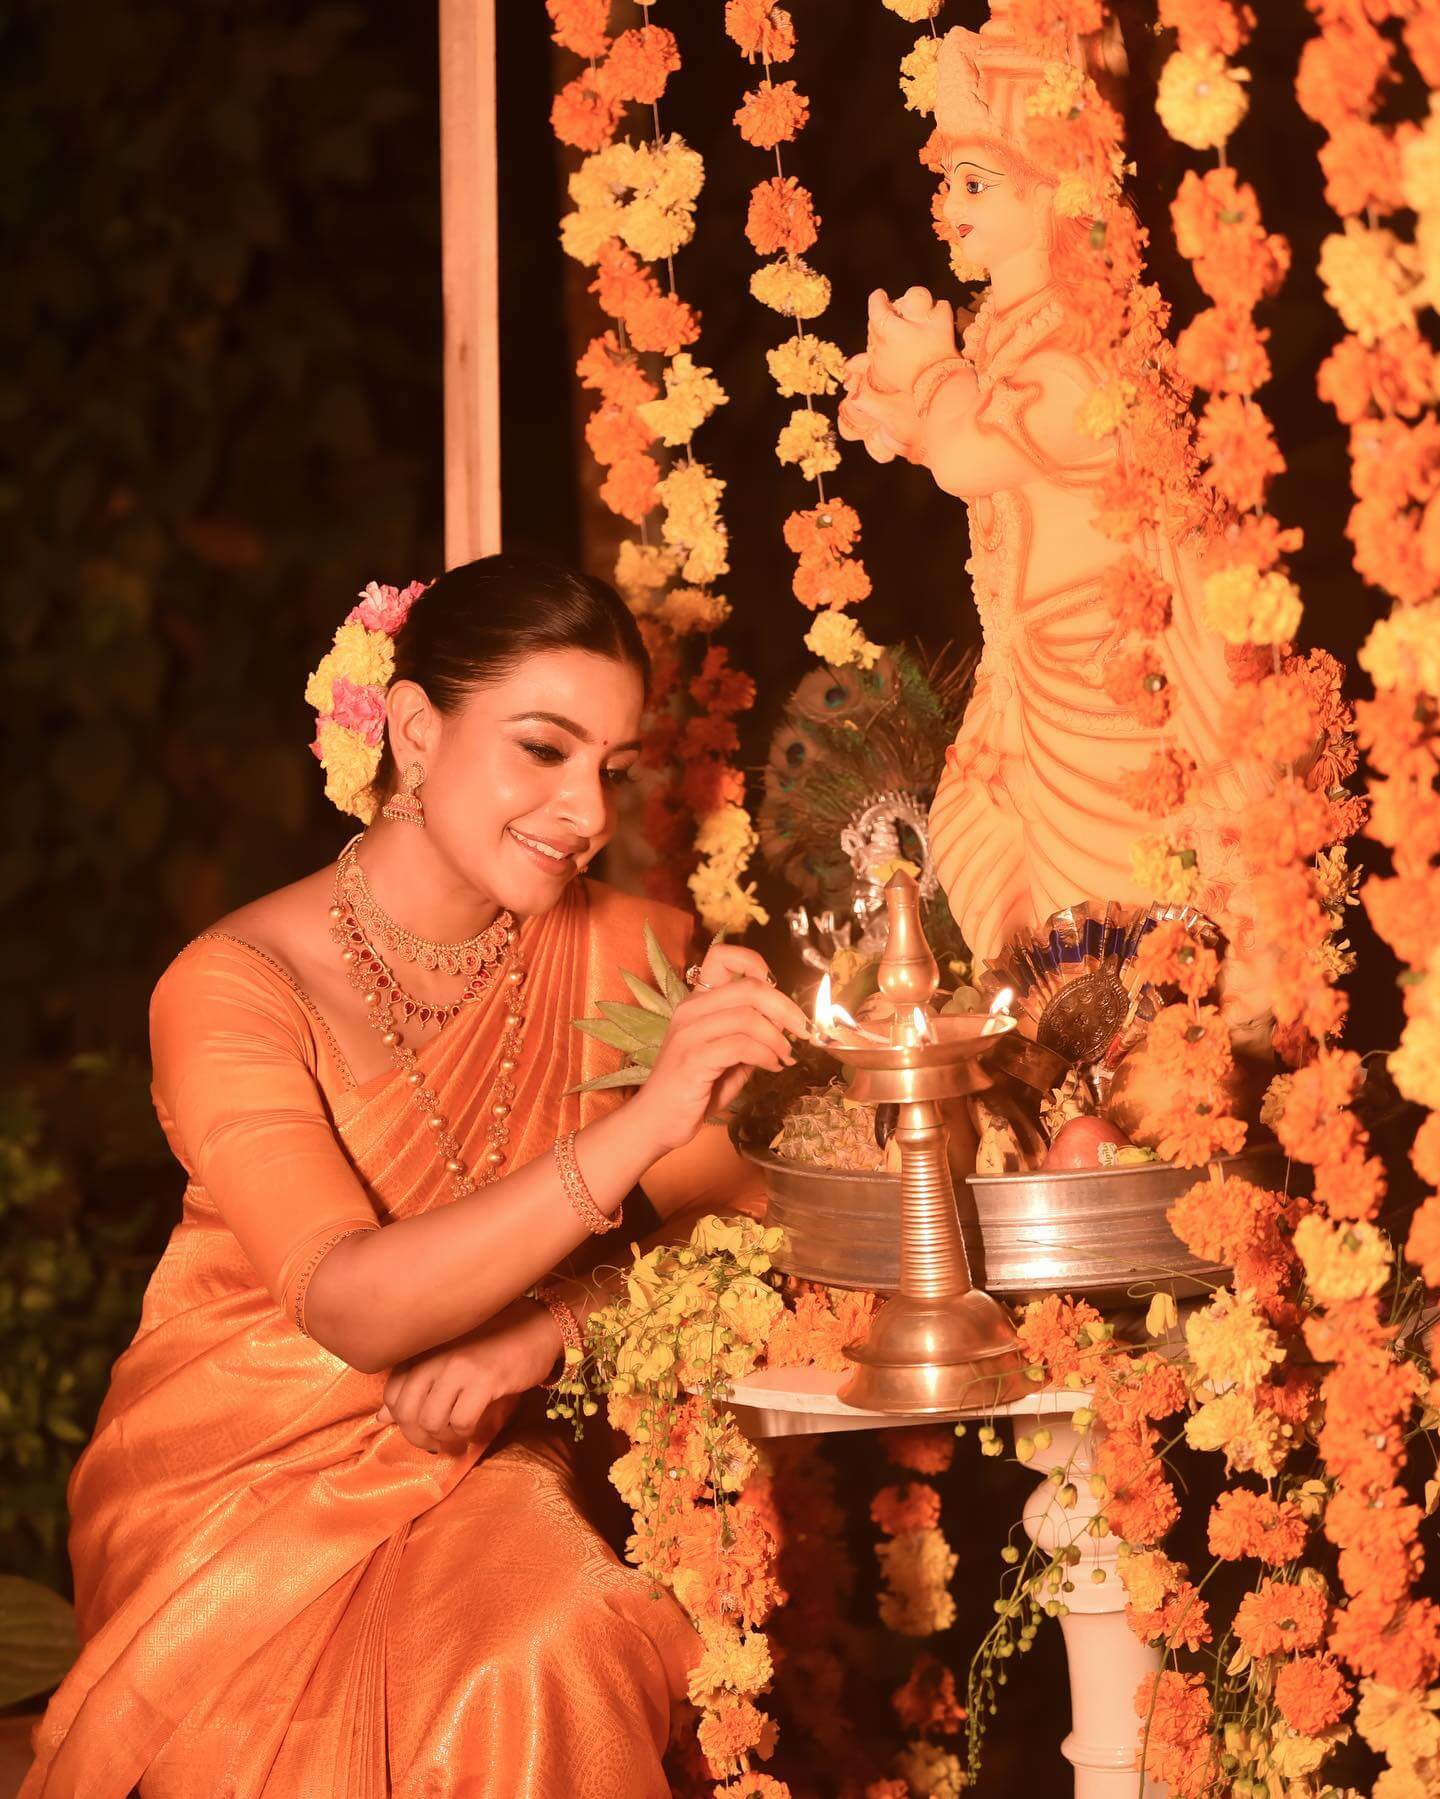 Alphy Panjikaran Gives Us Festive Vibes In Orange Kanjeevaram Silk Saree With Sleek Bun Hairstyle